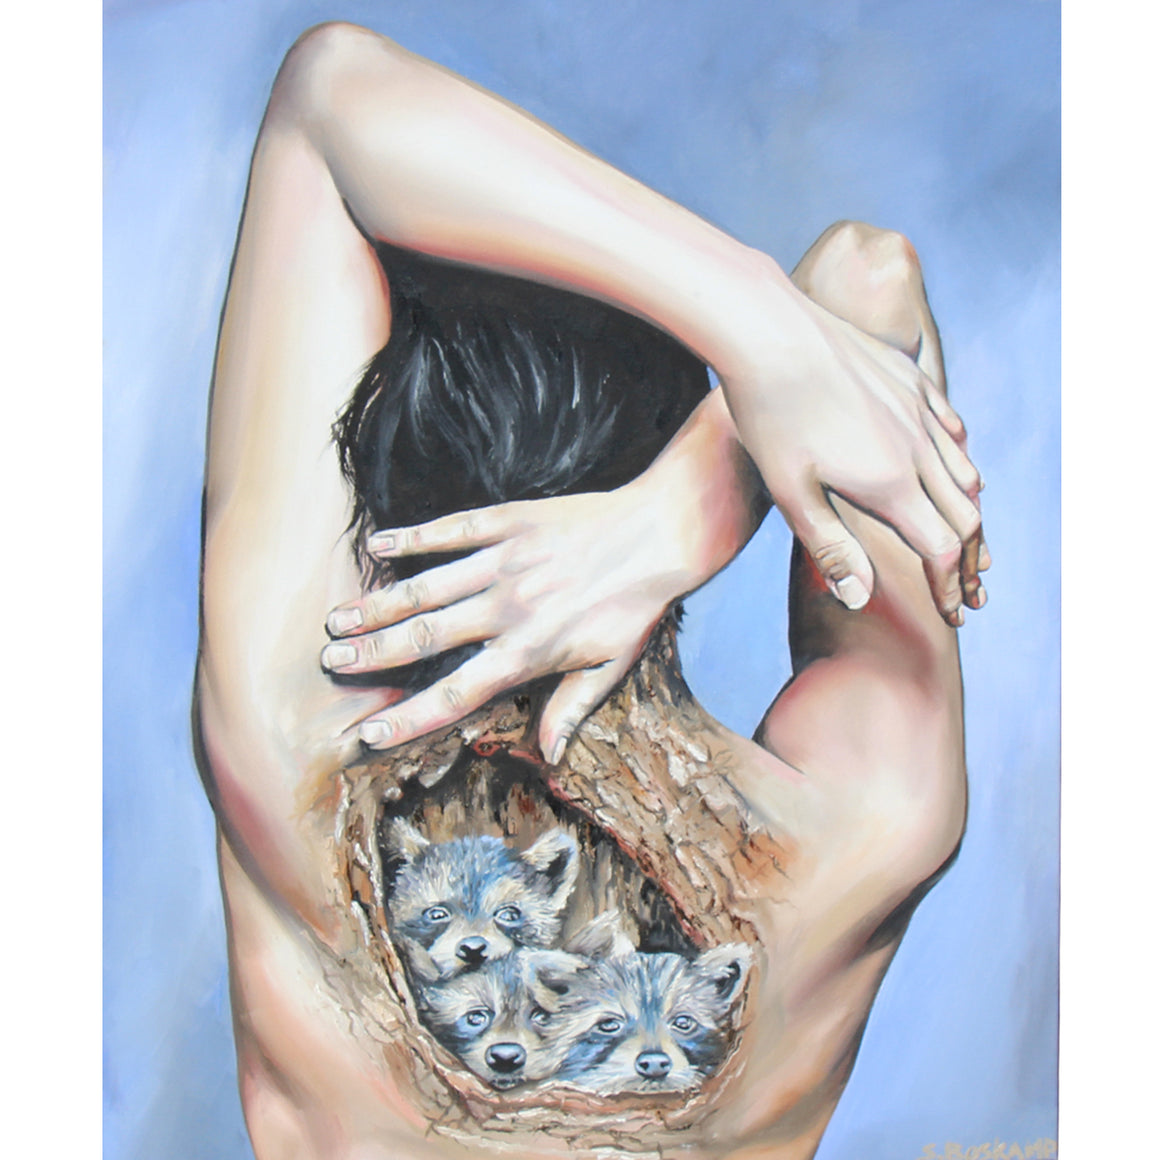 Cradled - Sandra Boskamp -20 x 24"